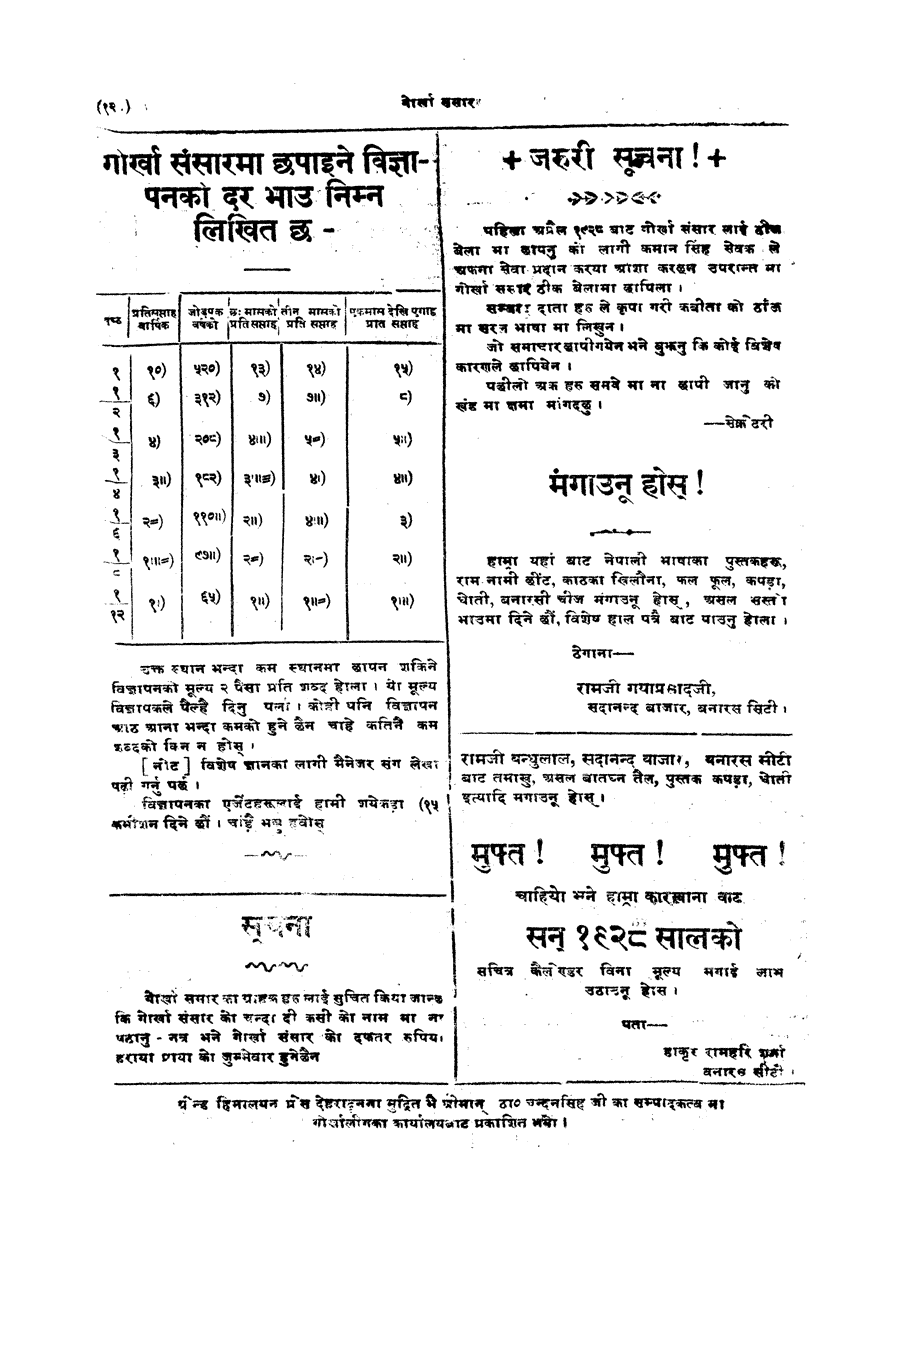 Gorkha Sansar, 18 May 1928, page 12